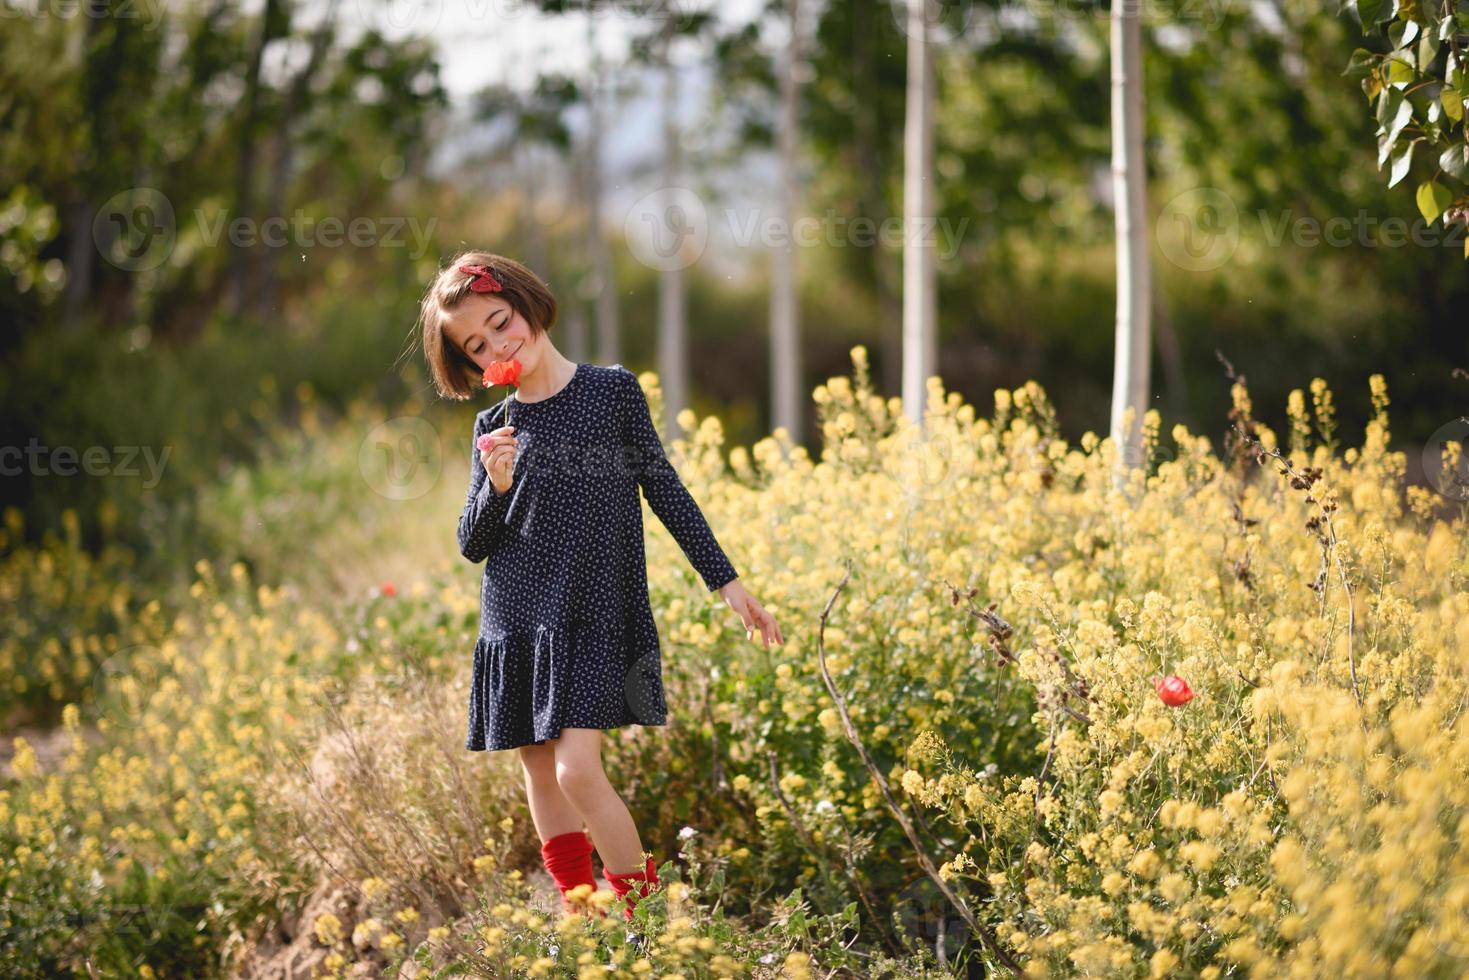 klein meisje dat in het natuurveld loopt en een mooie jurk draagt foto